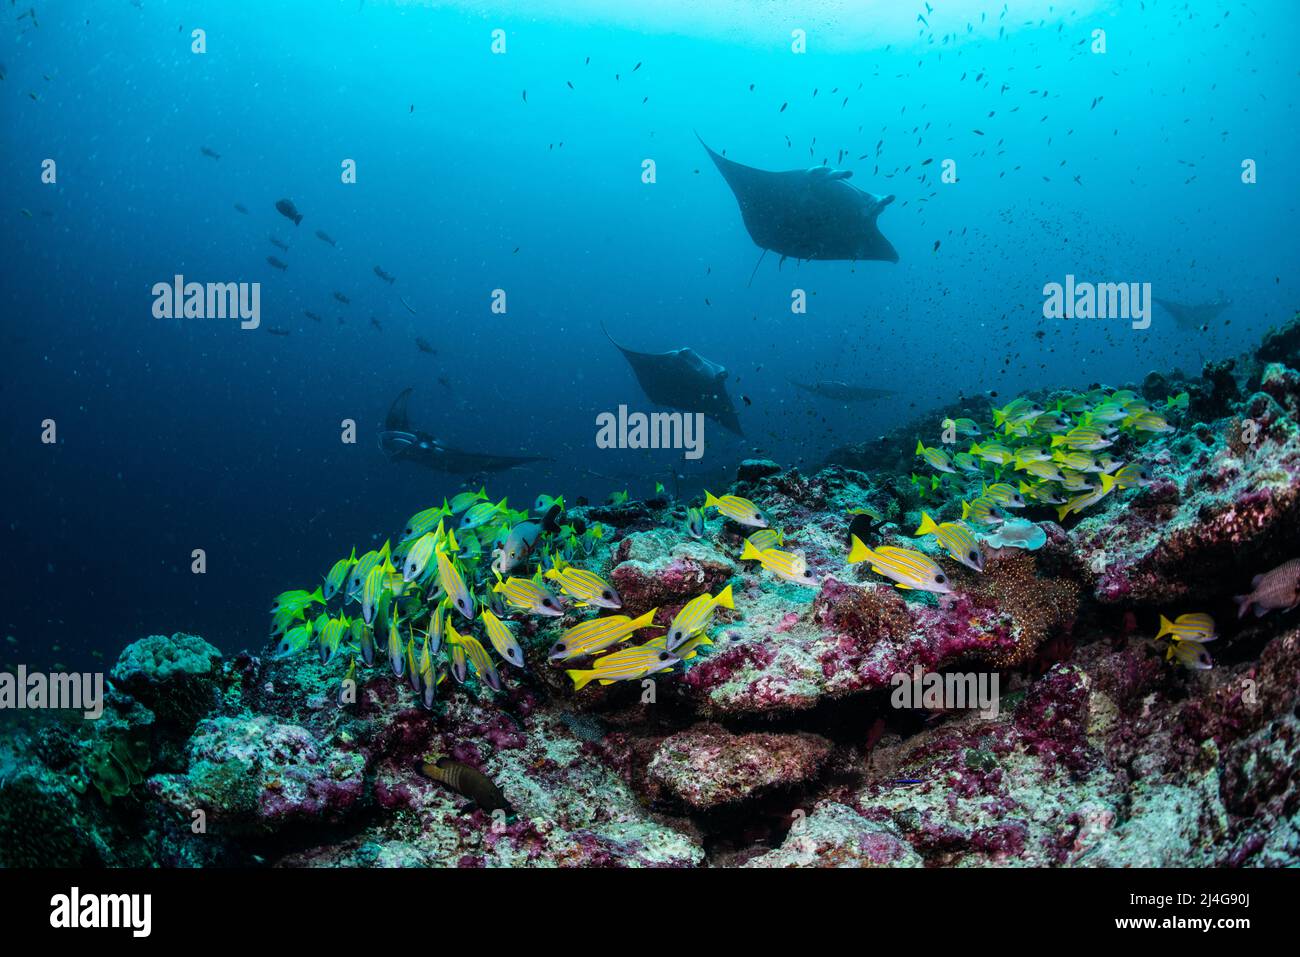 Reef scenery Stock Photo